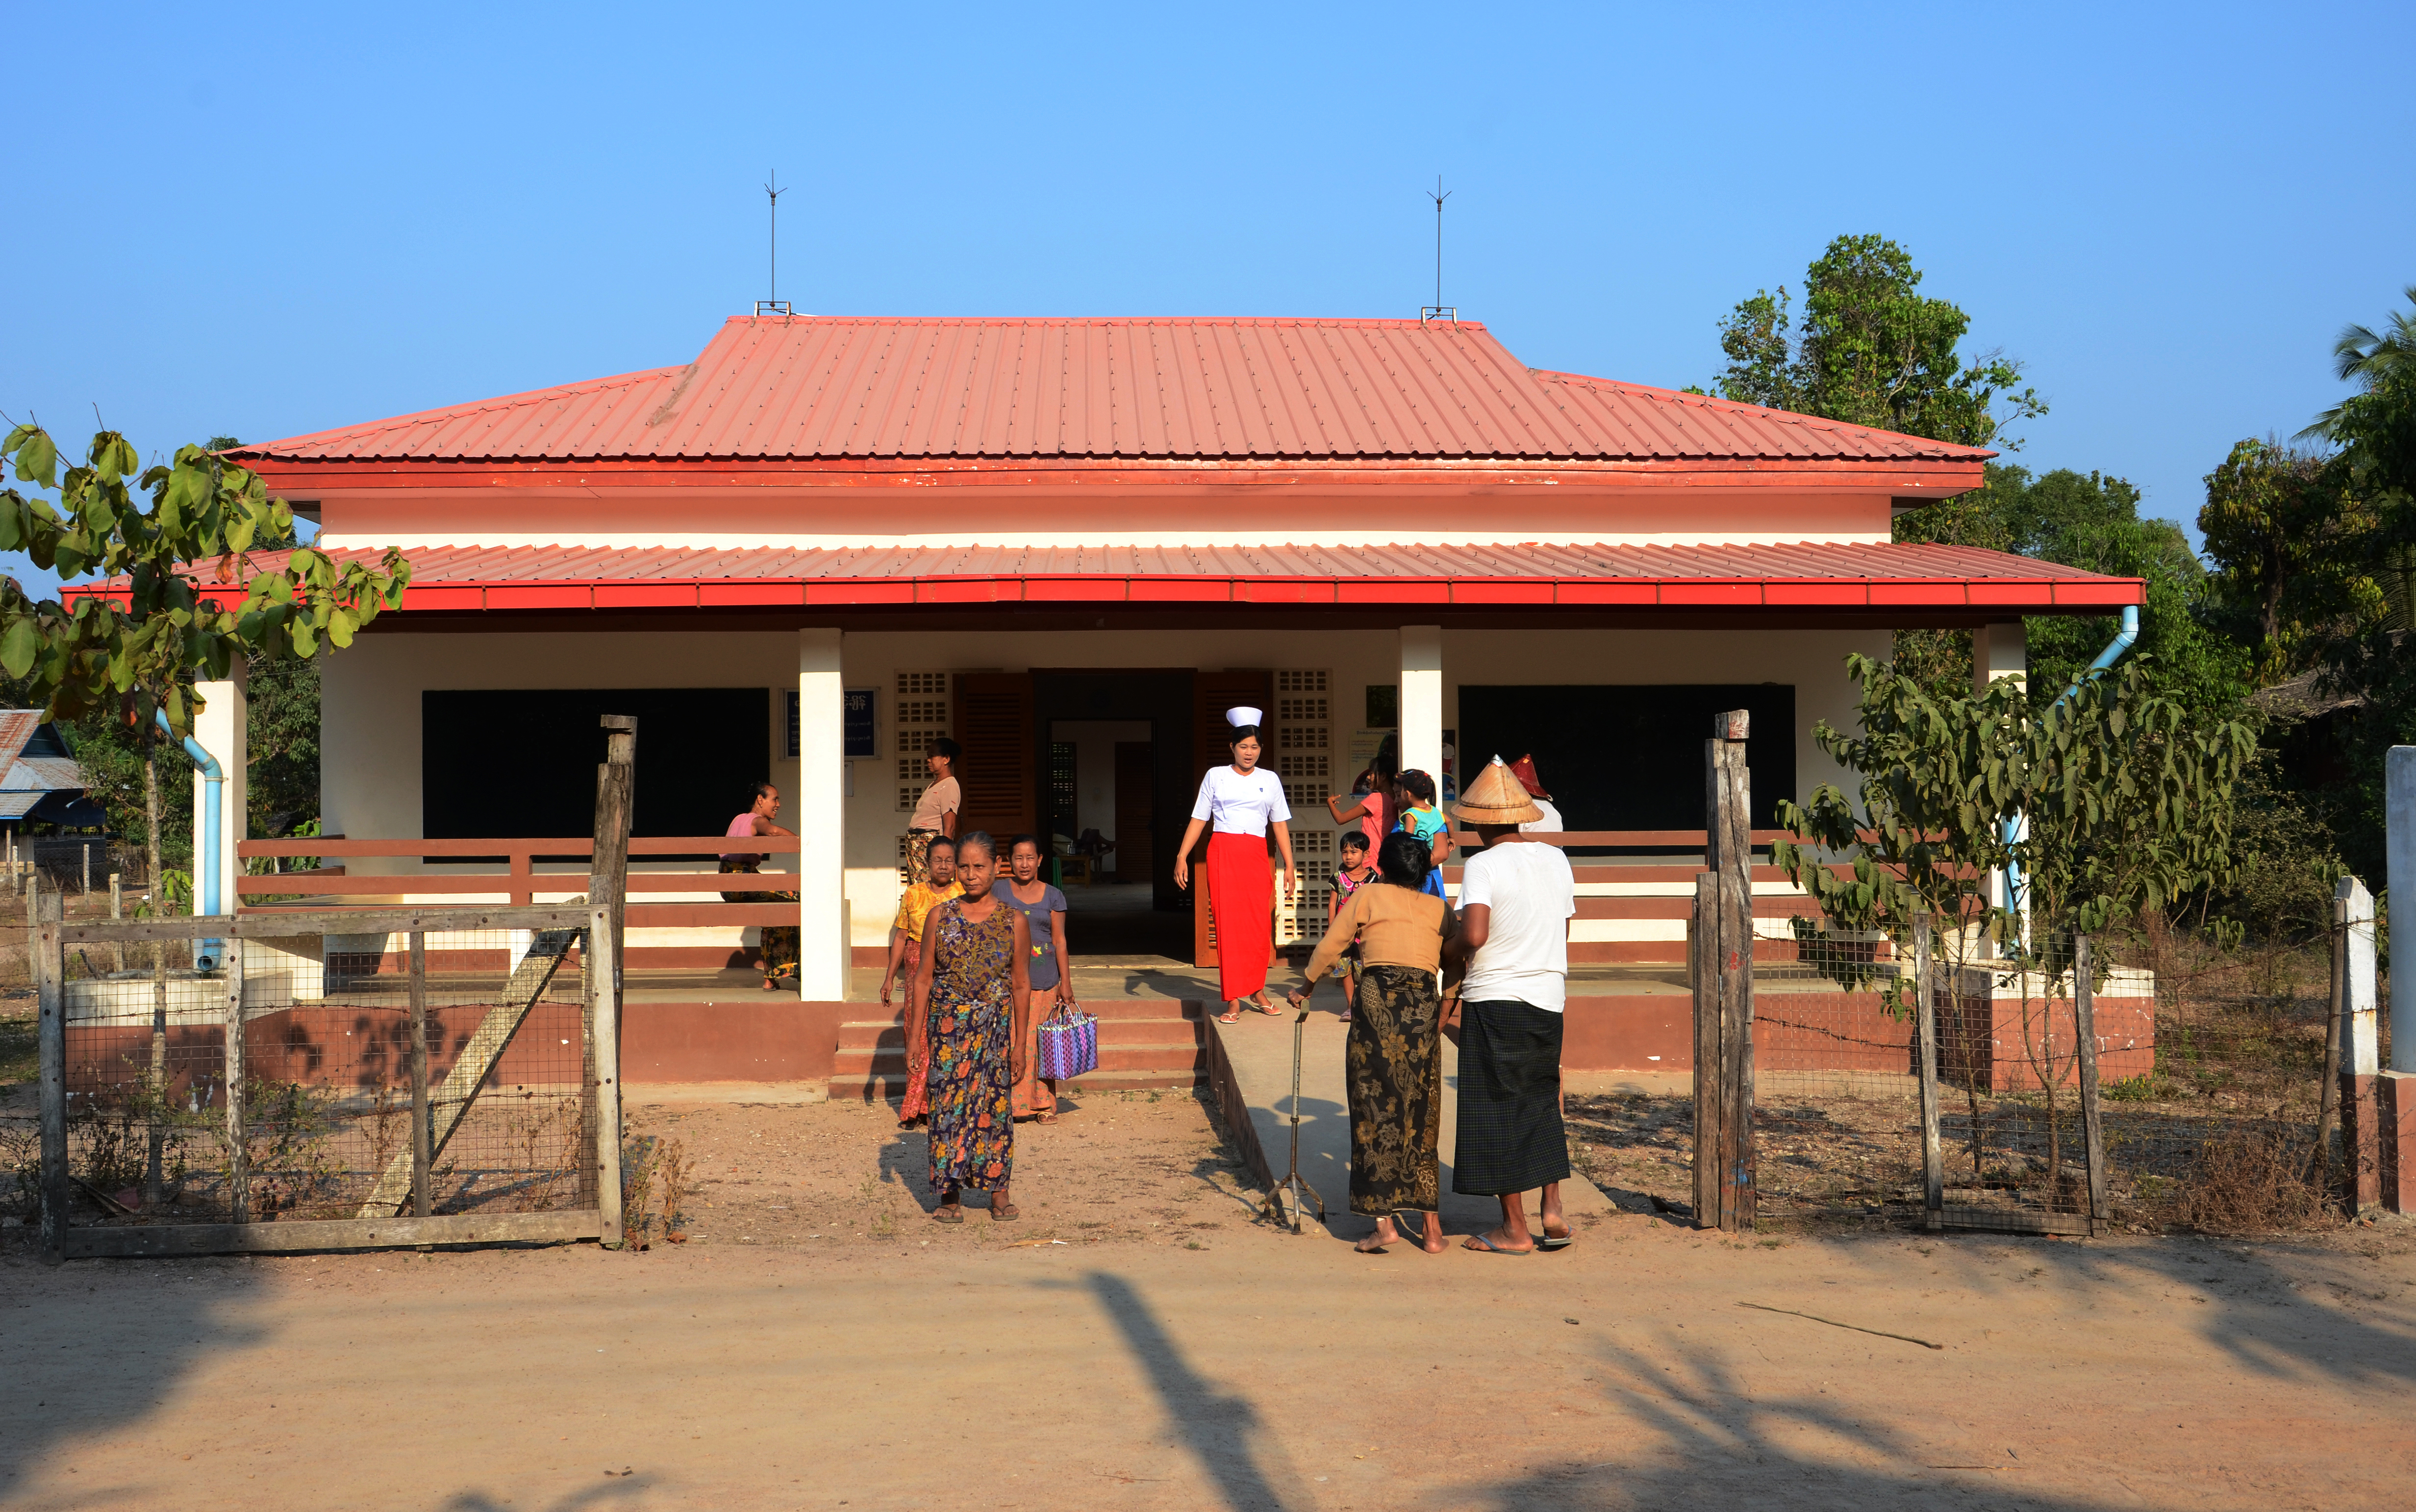 une infirmière accueille des patients à l’entrée d’un centre de soin. 